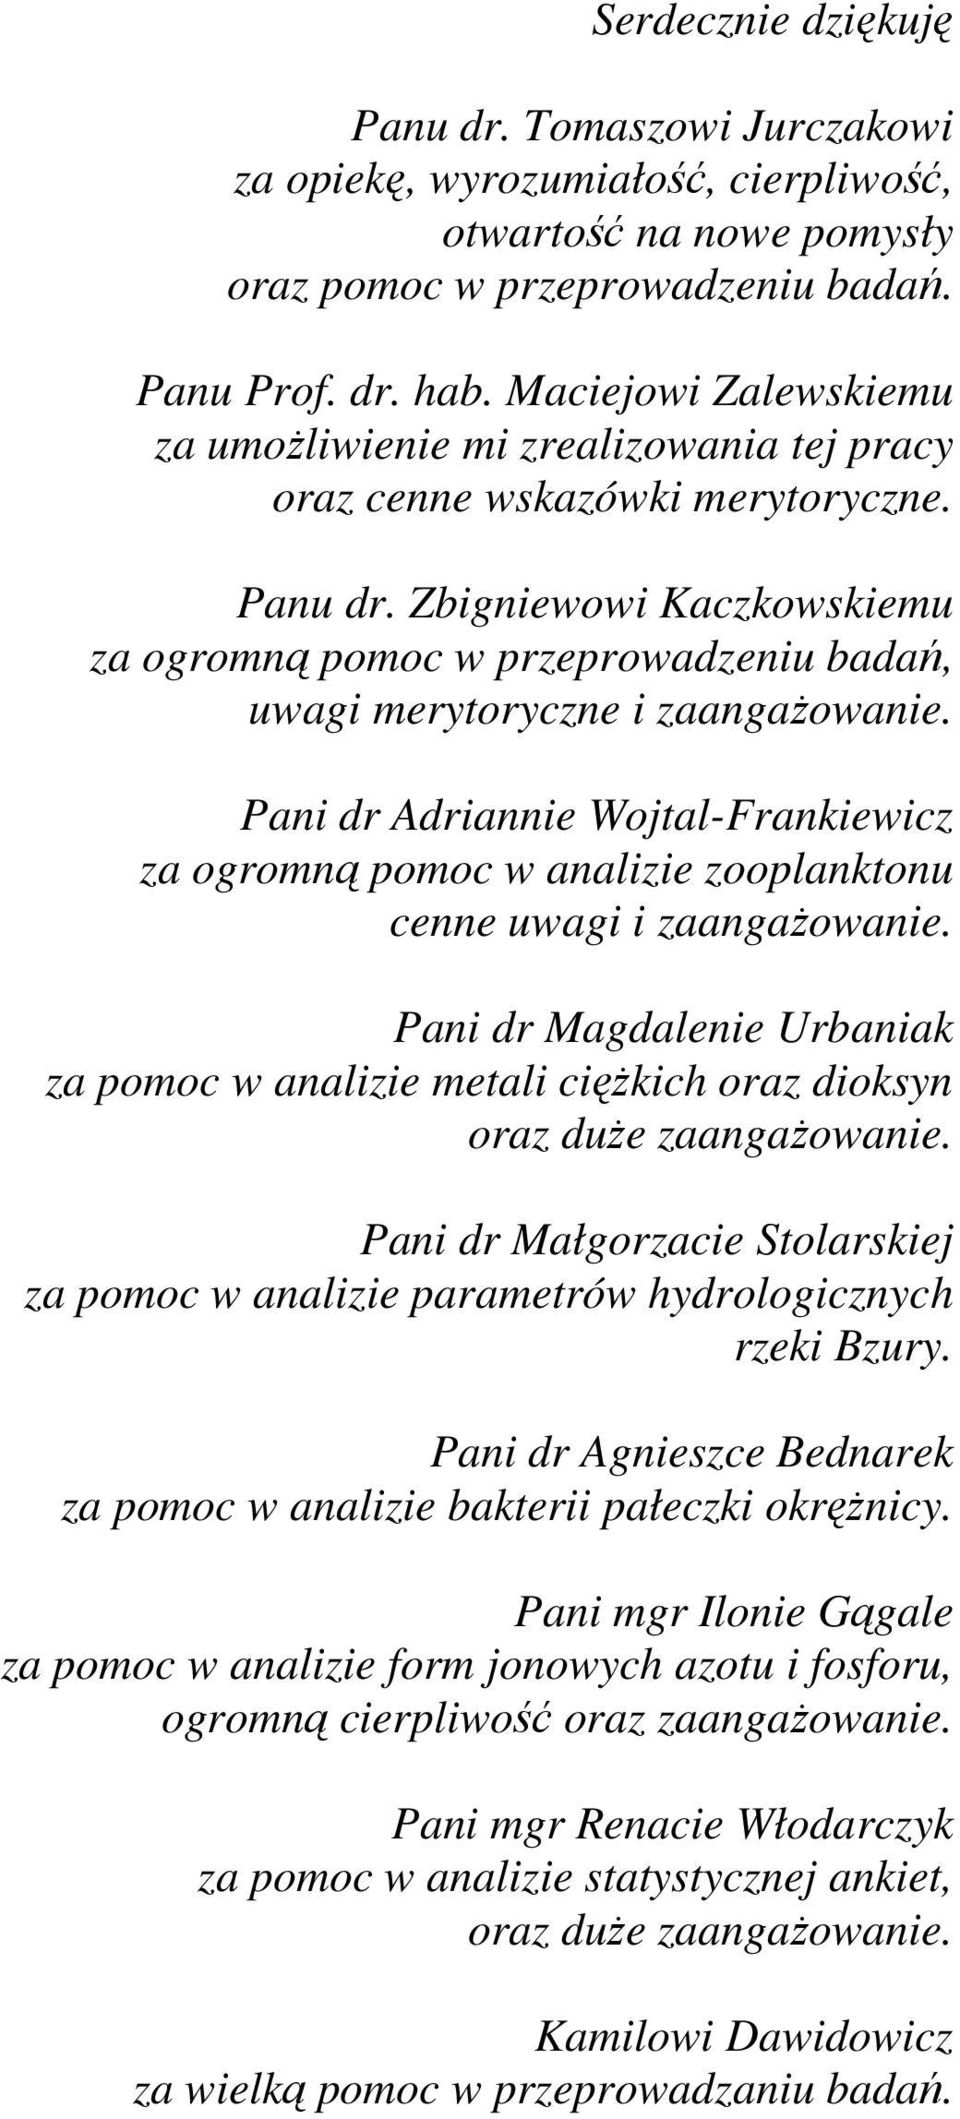 Zbigniewowi Kaczkowskiemu za ogromną pomoc w przeprowadzeniu badań, uwagi merytoryczne i zaangażowanie.